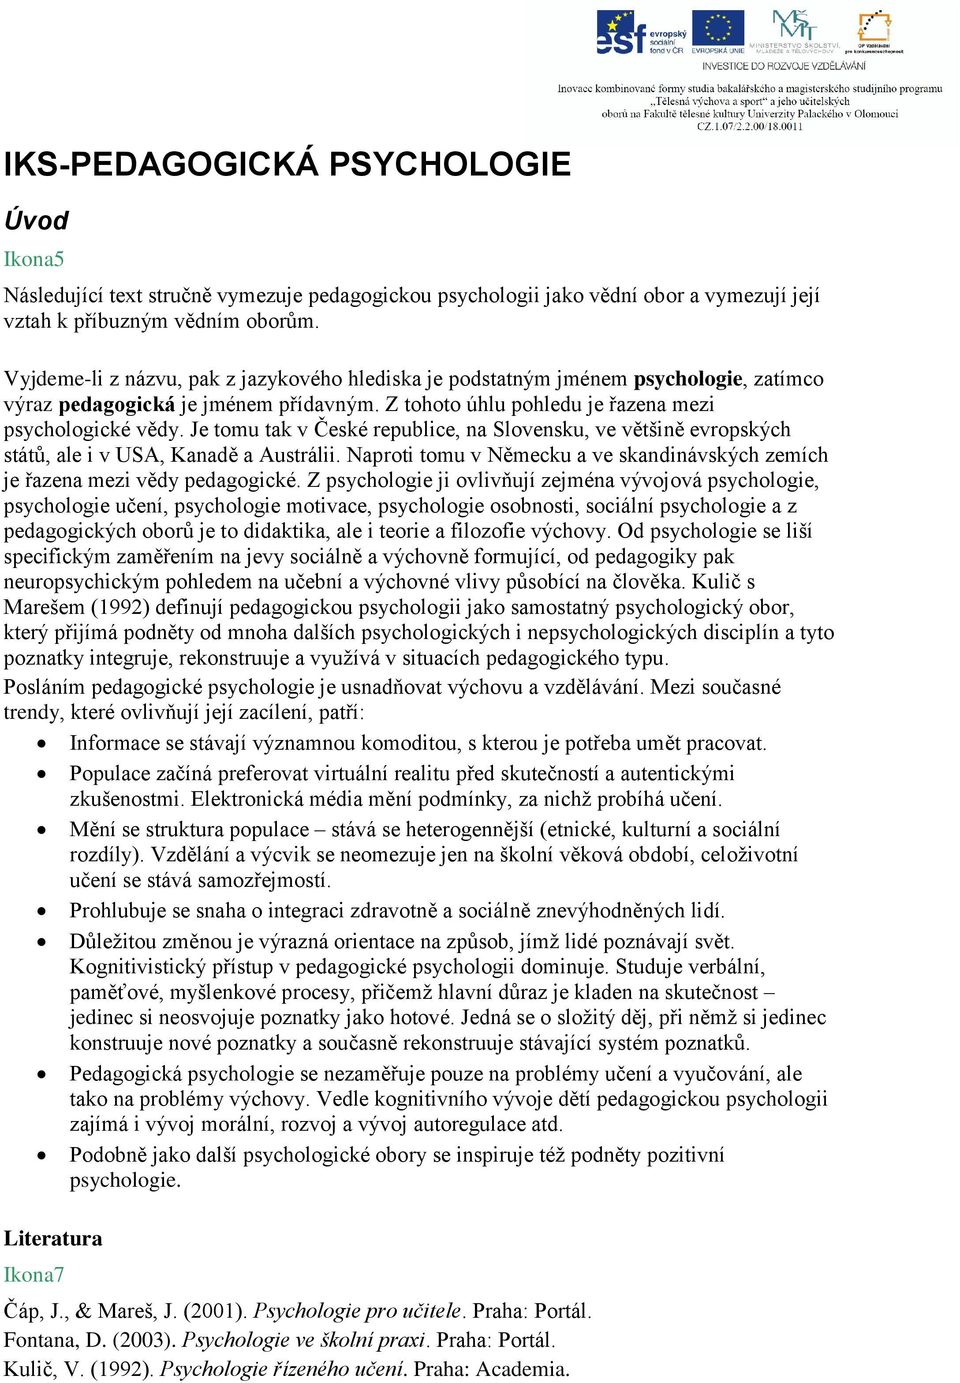 IKS-PEDAGOGICKÁ PSYCHOLOGIE - PDF Stažení zdarma